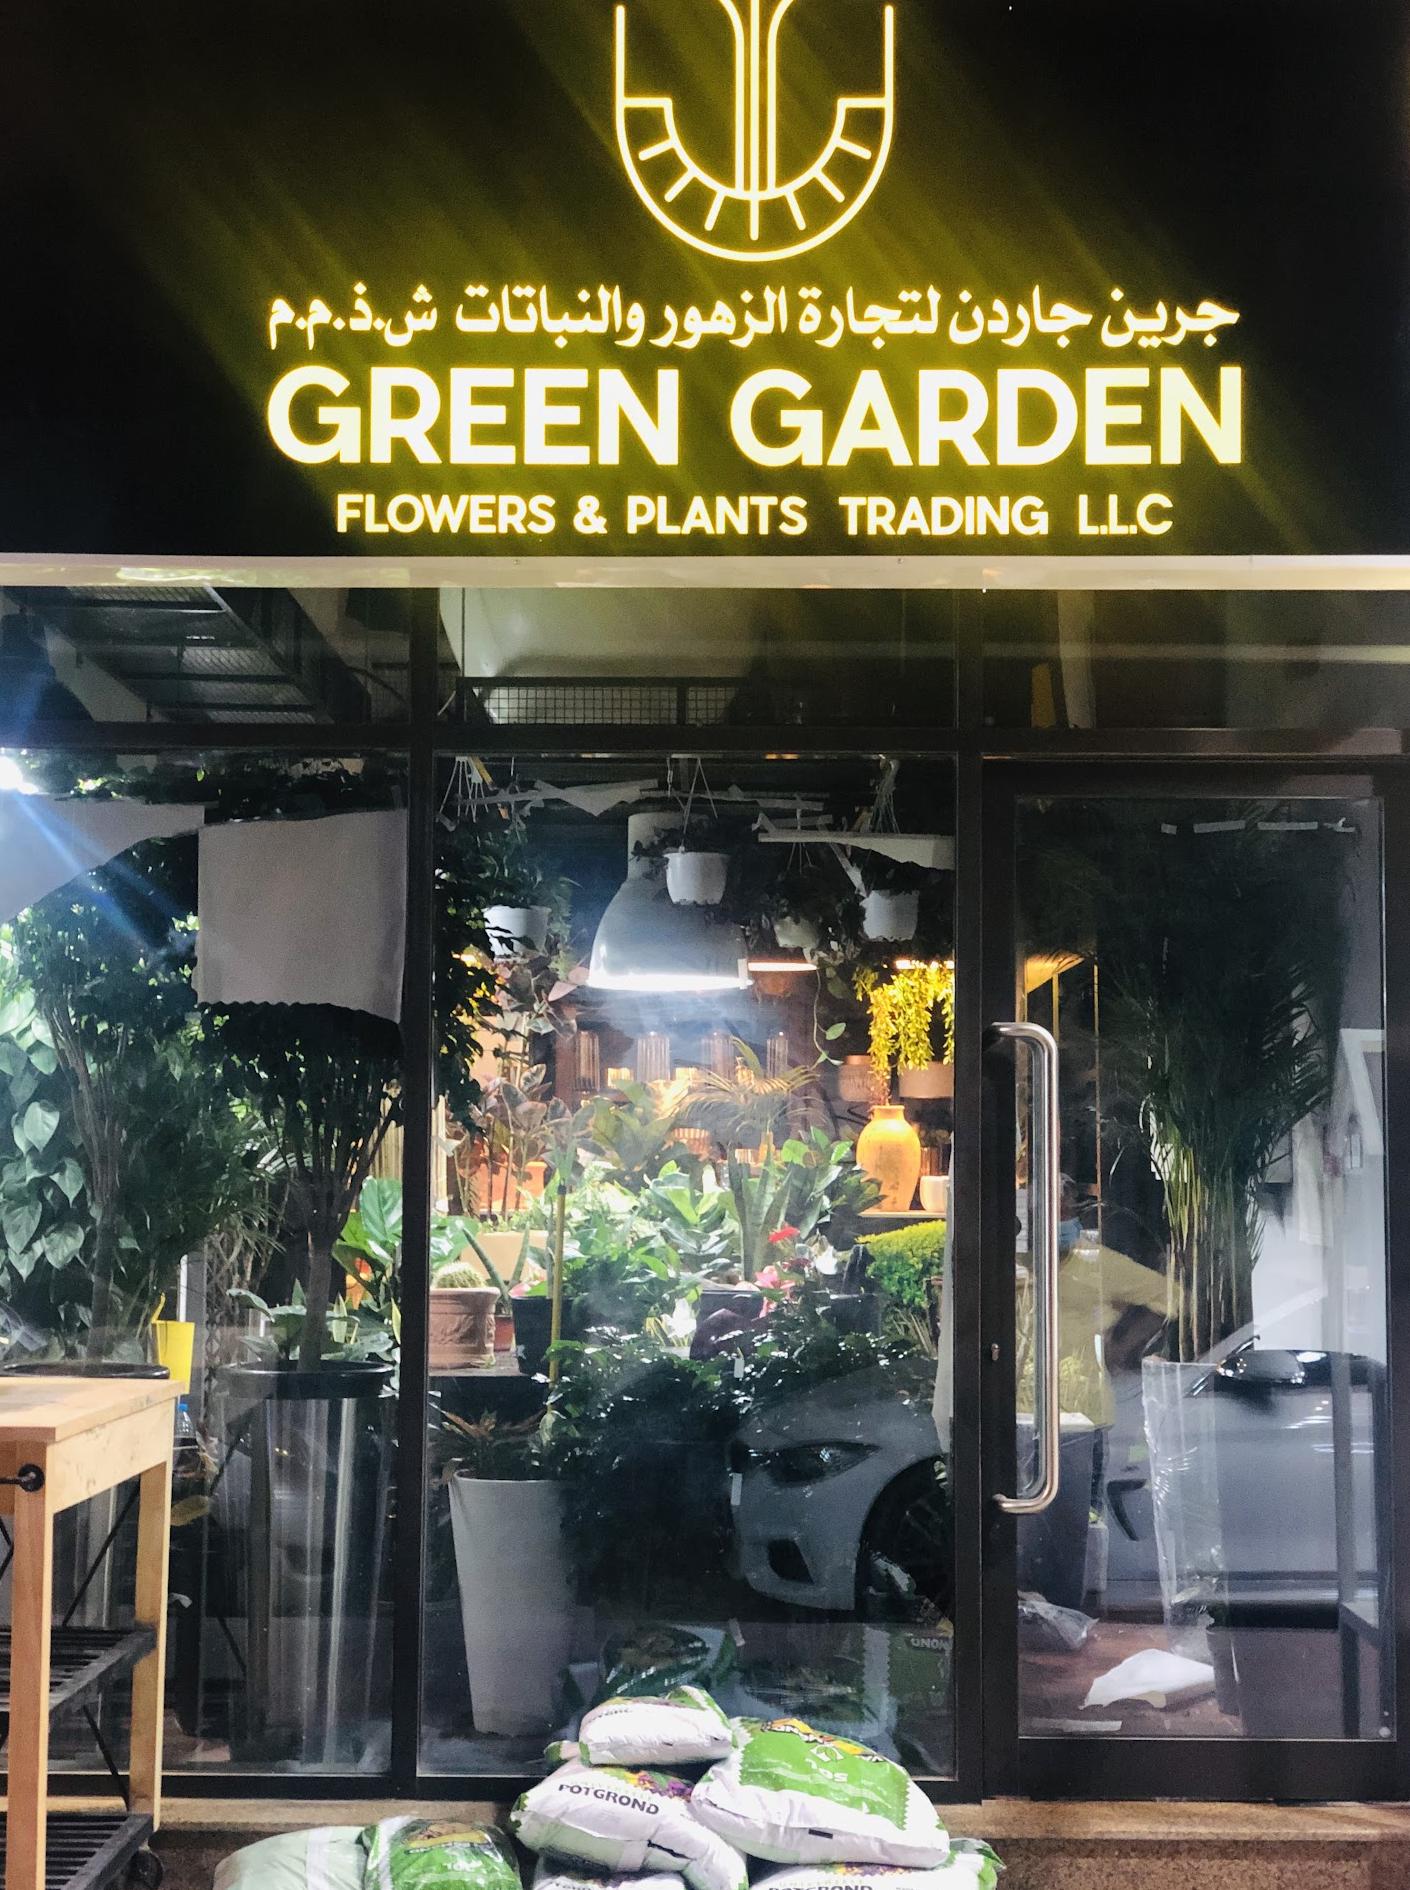 Comercio de flores y plantas de jardín verde